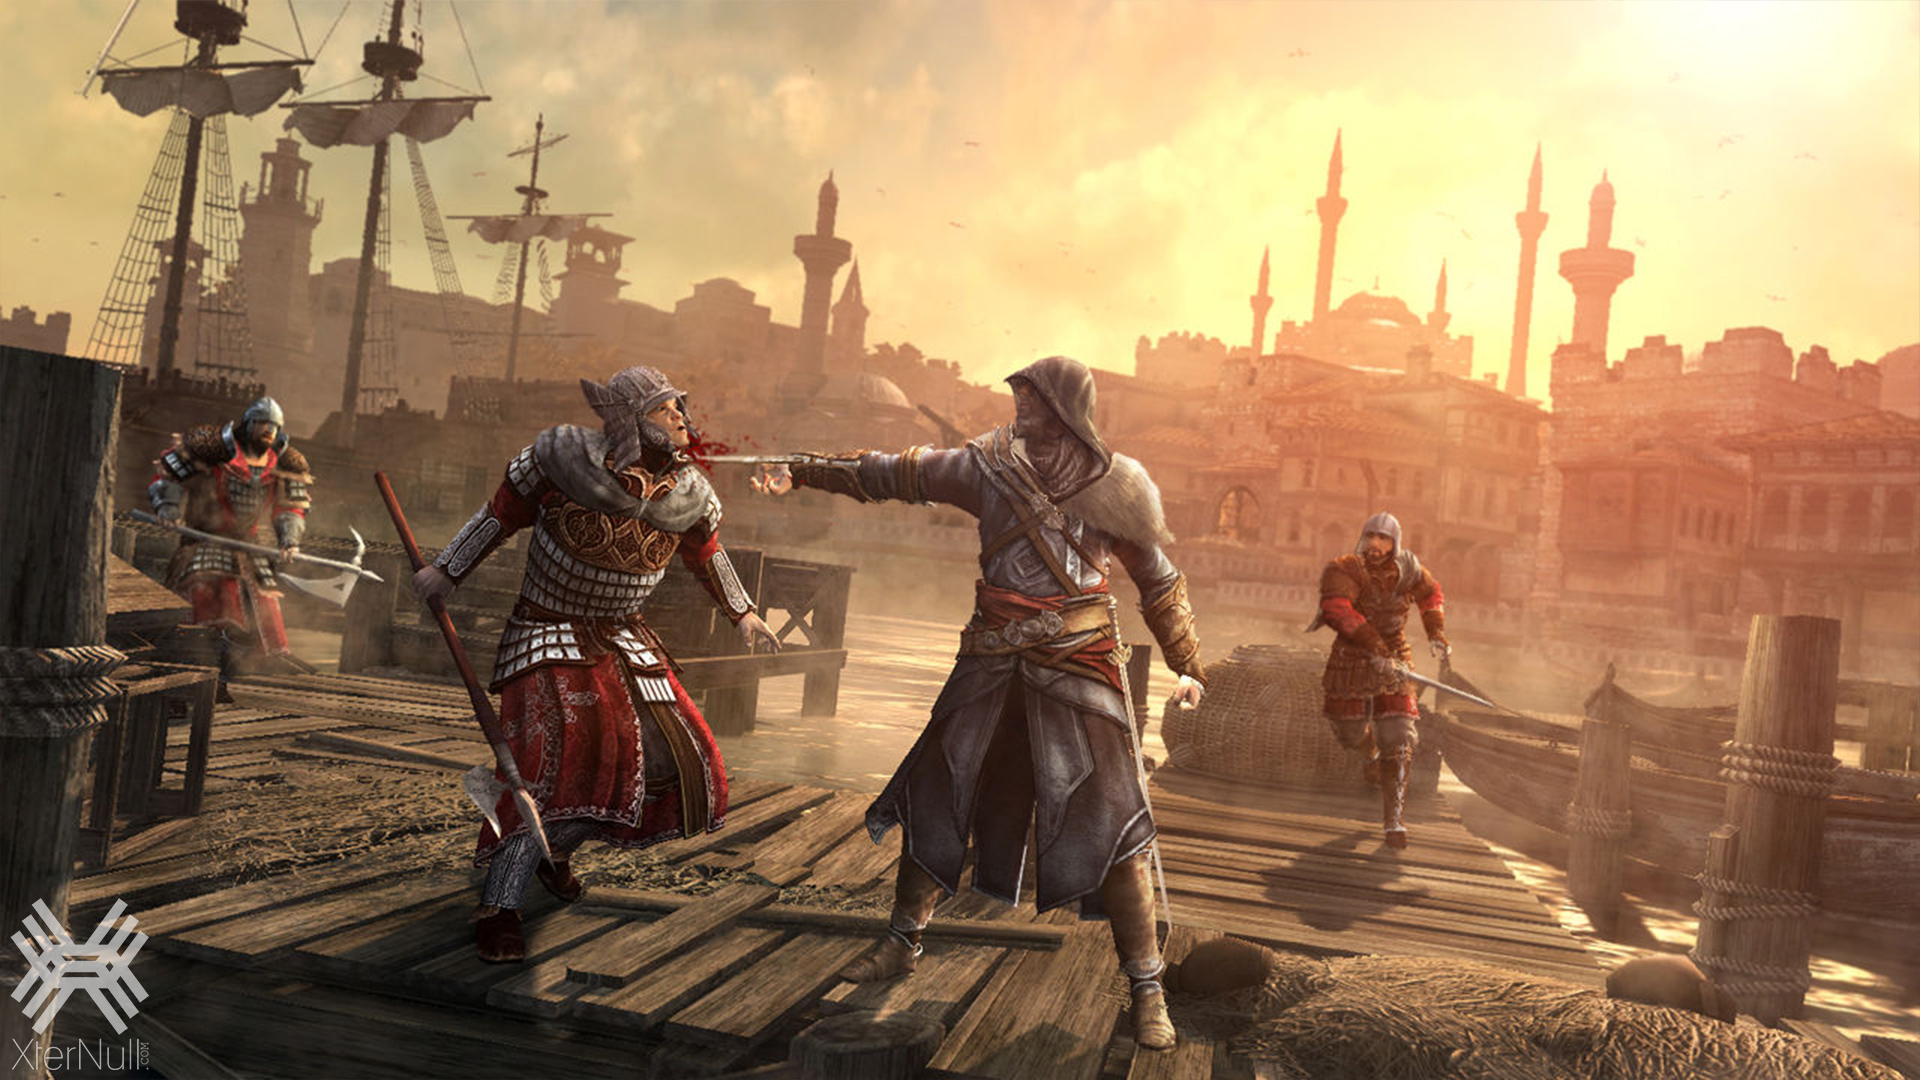 Название игры по изображению. Assassin"s Creed: Revelations. Ассасин Крид революшен. Assassin’s Creed: Revelations – 2011. Ассасин Крид Откровение.